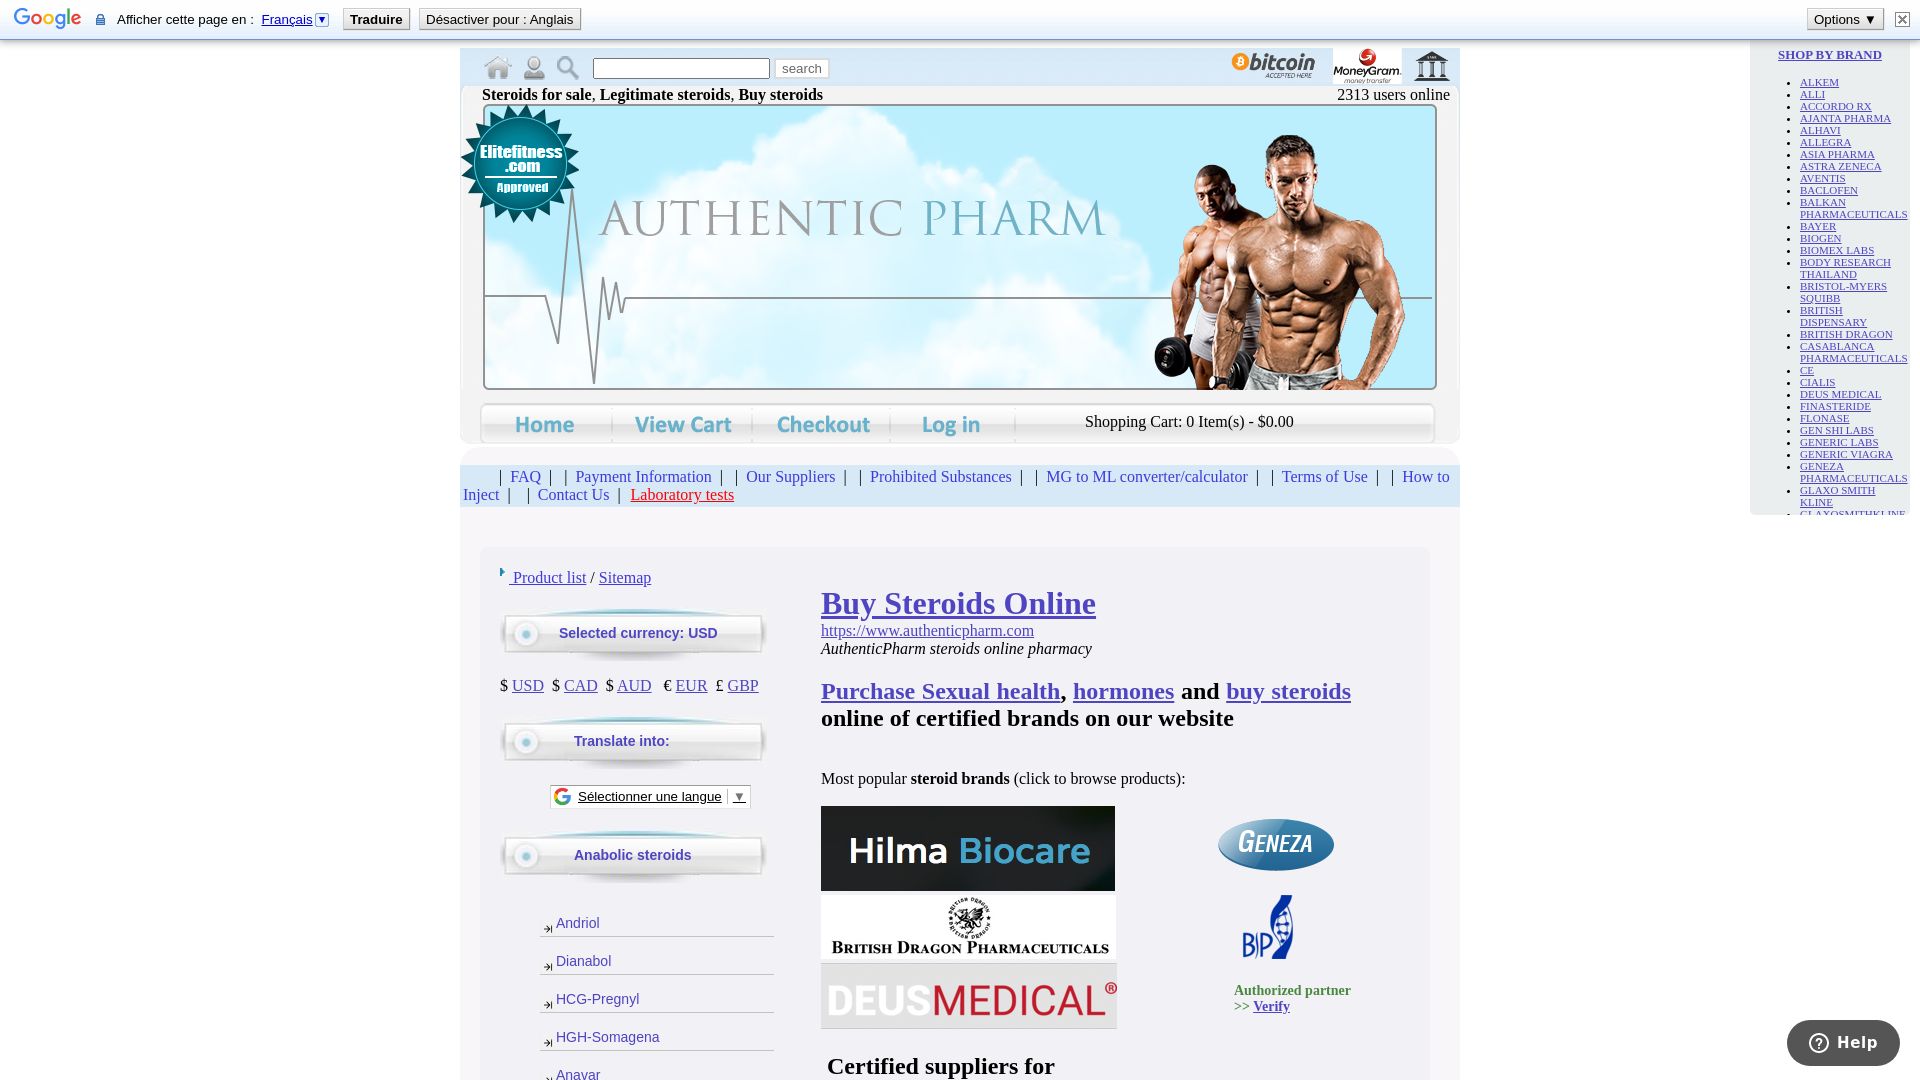 вебсайт pharma-us.net Є   ONLINE